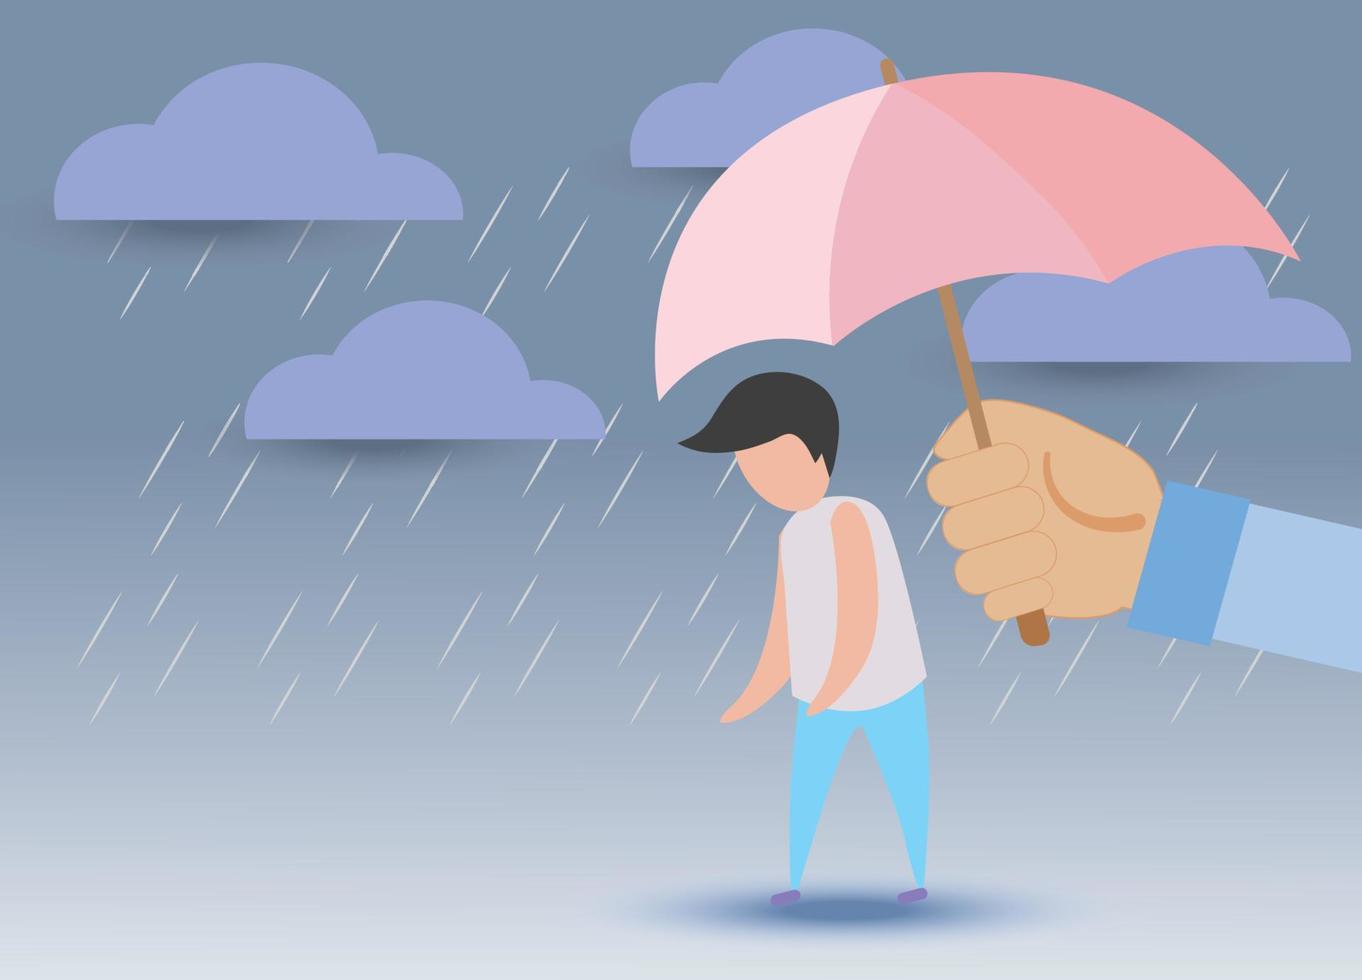 el hombre solitario, triste y deprimido tiene ayuda para protegerse con la mano grande, use un paraguas para protegerse de la lluvia y el strom. vector